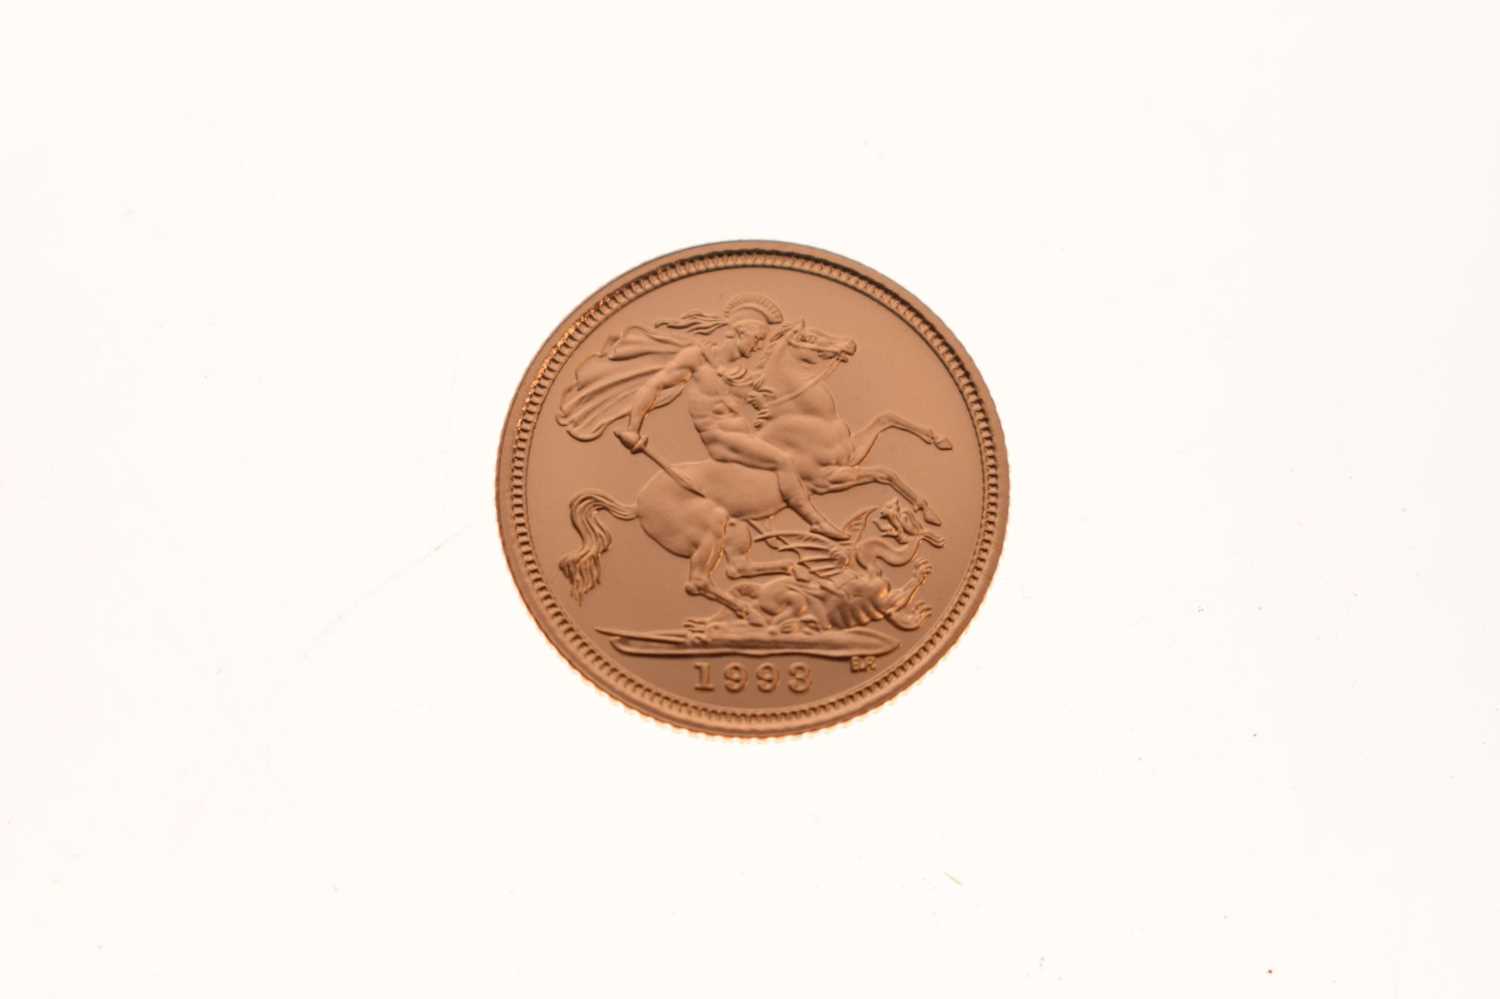 Royal Mint - Elizabeth II proof gold half sovereign, 1993 - Image 5 of 5